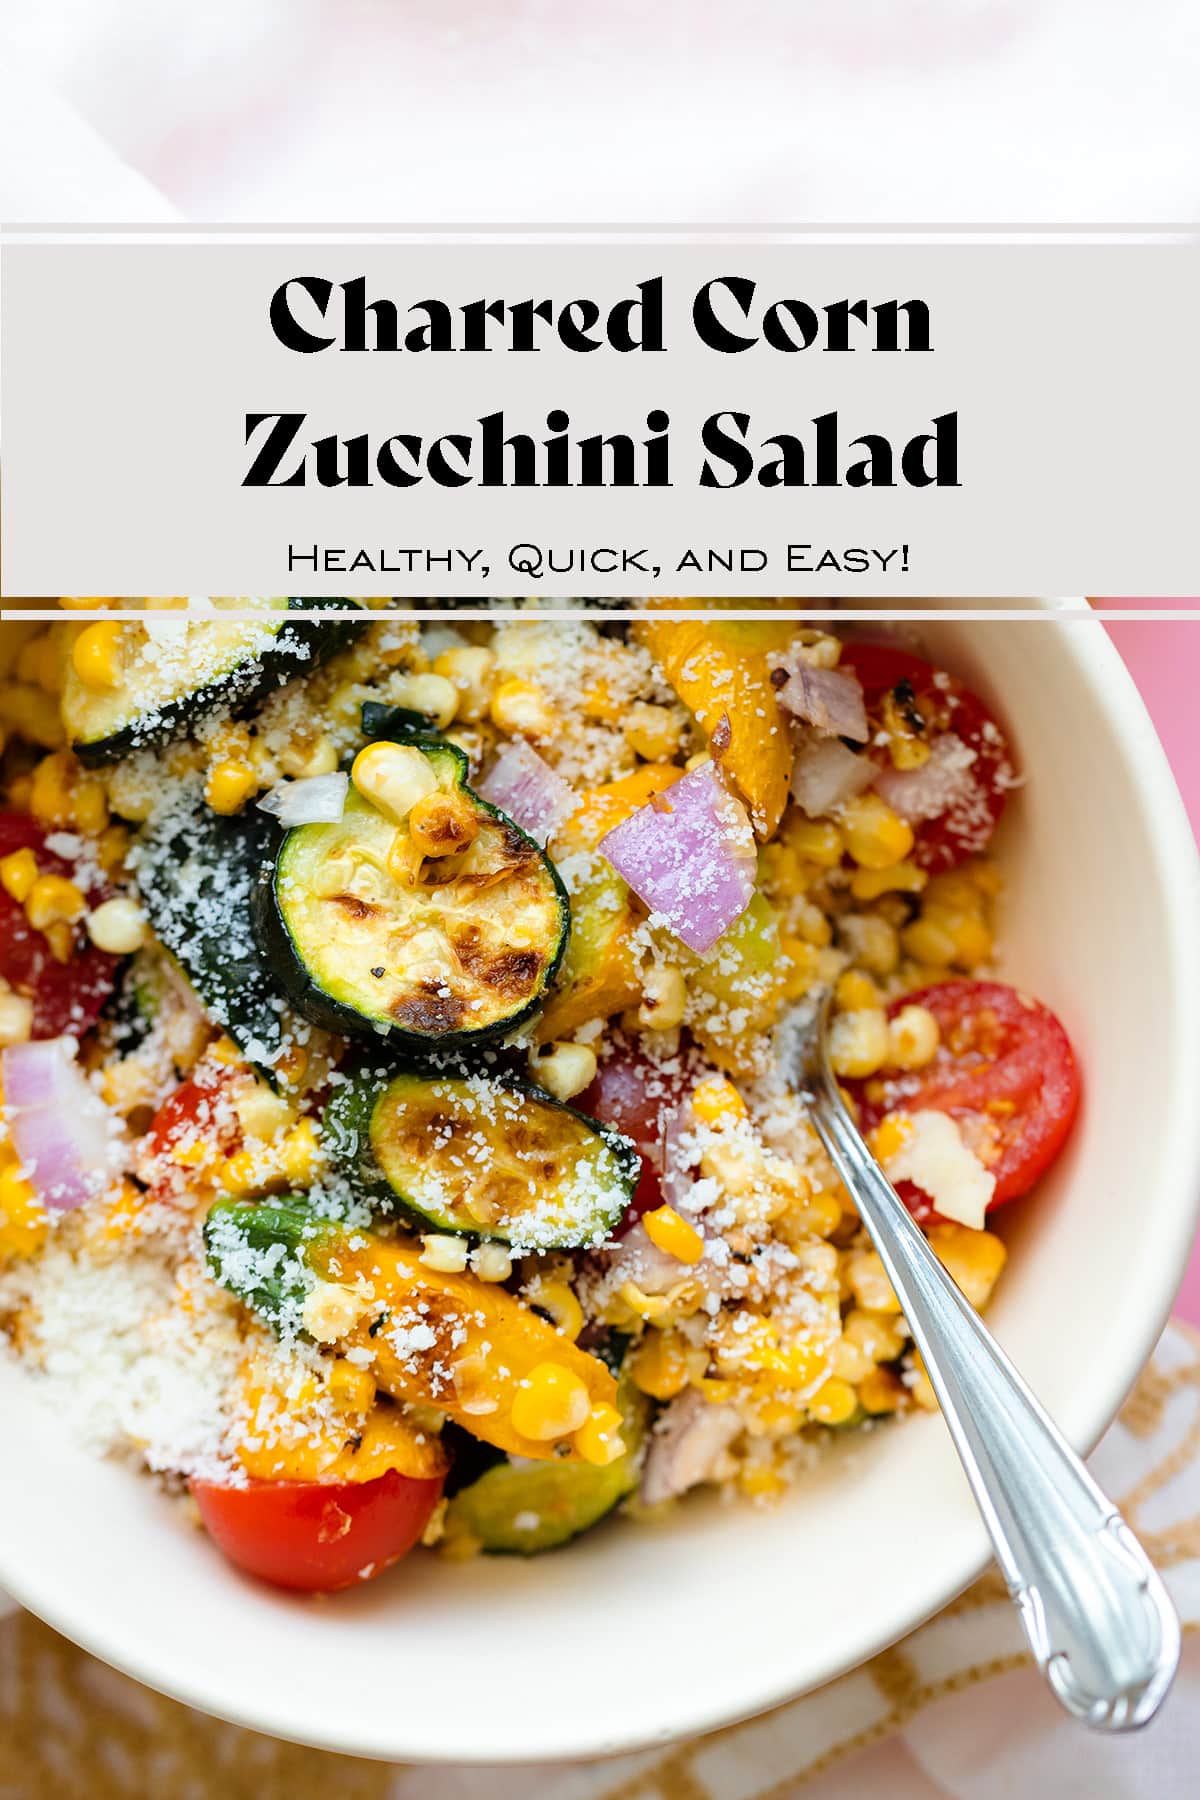 Charred Corn Zucchini Salad with Pecorino